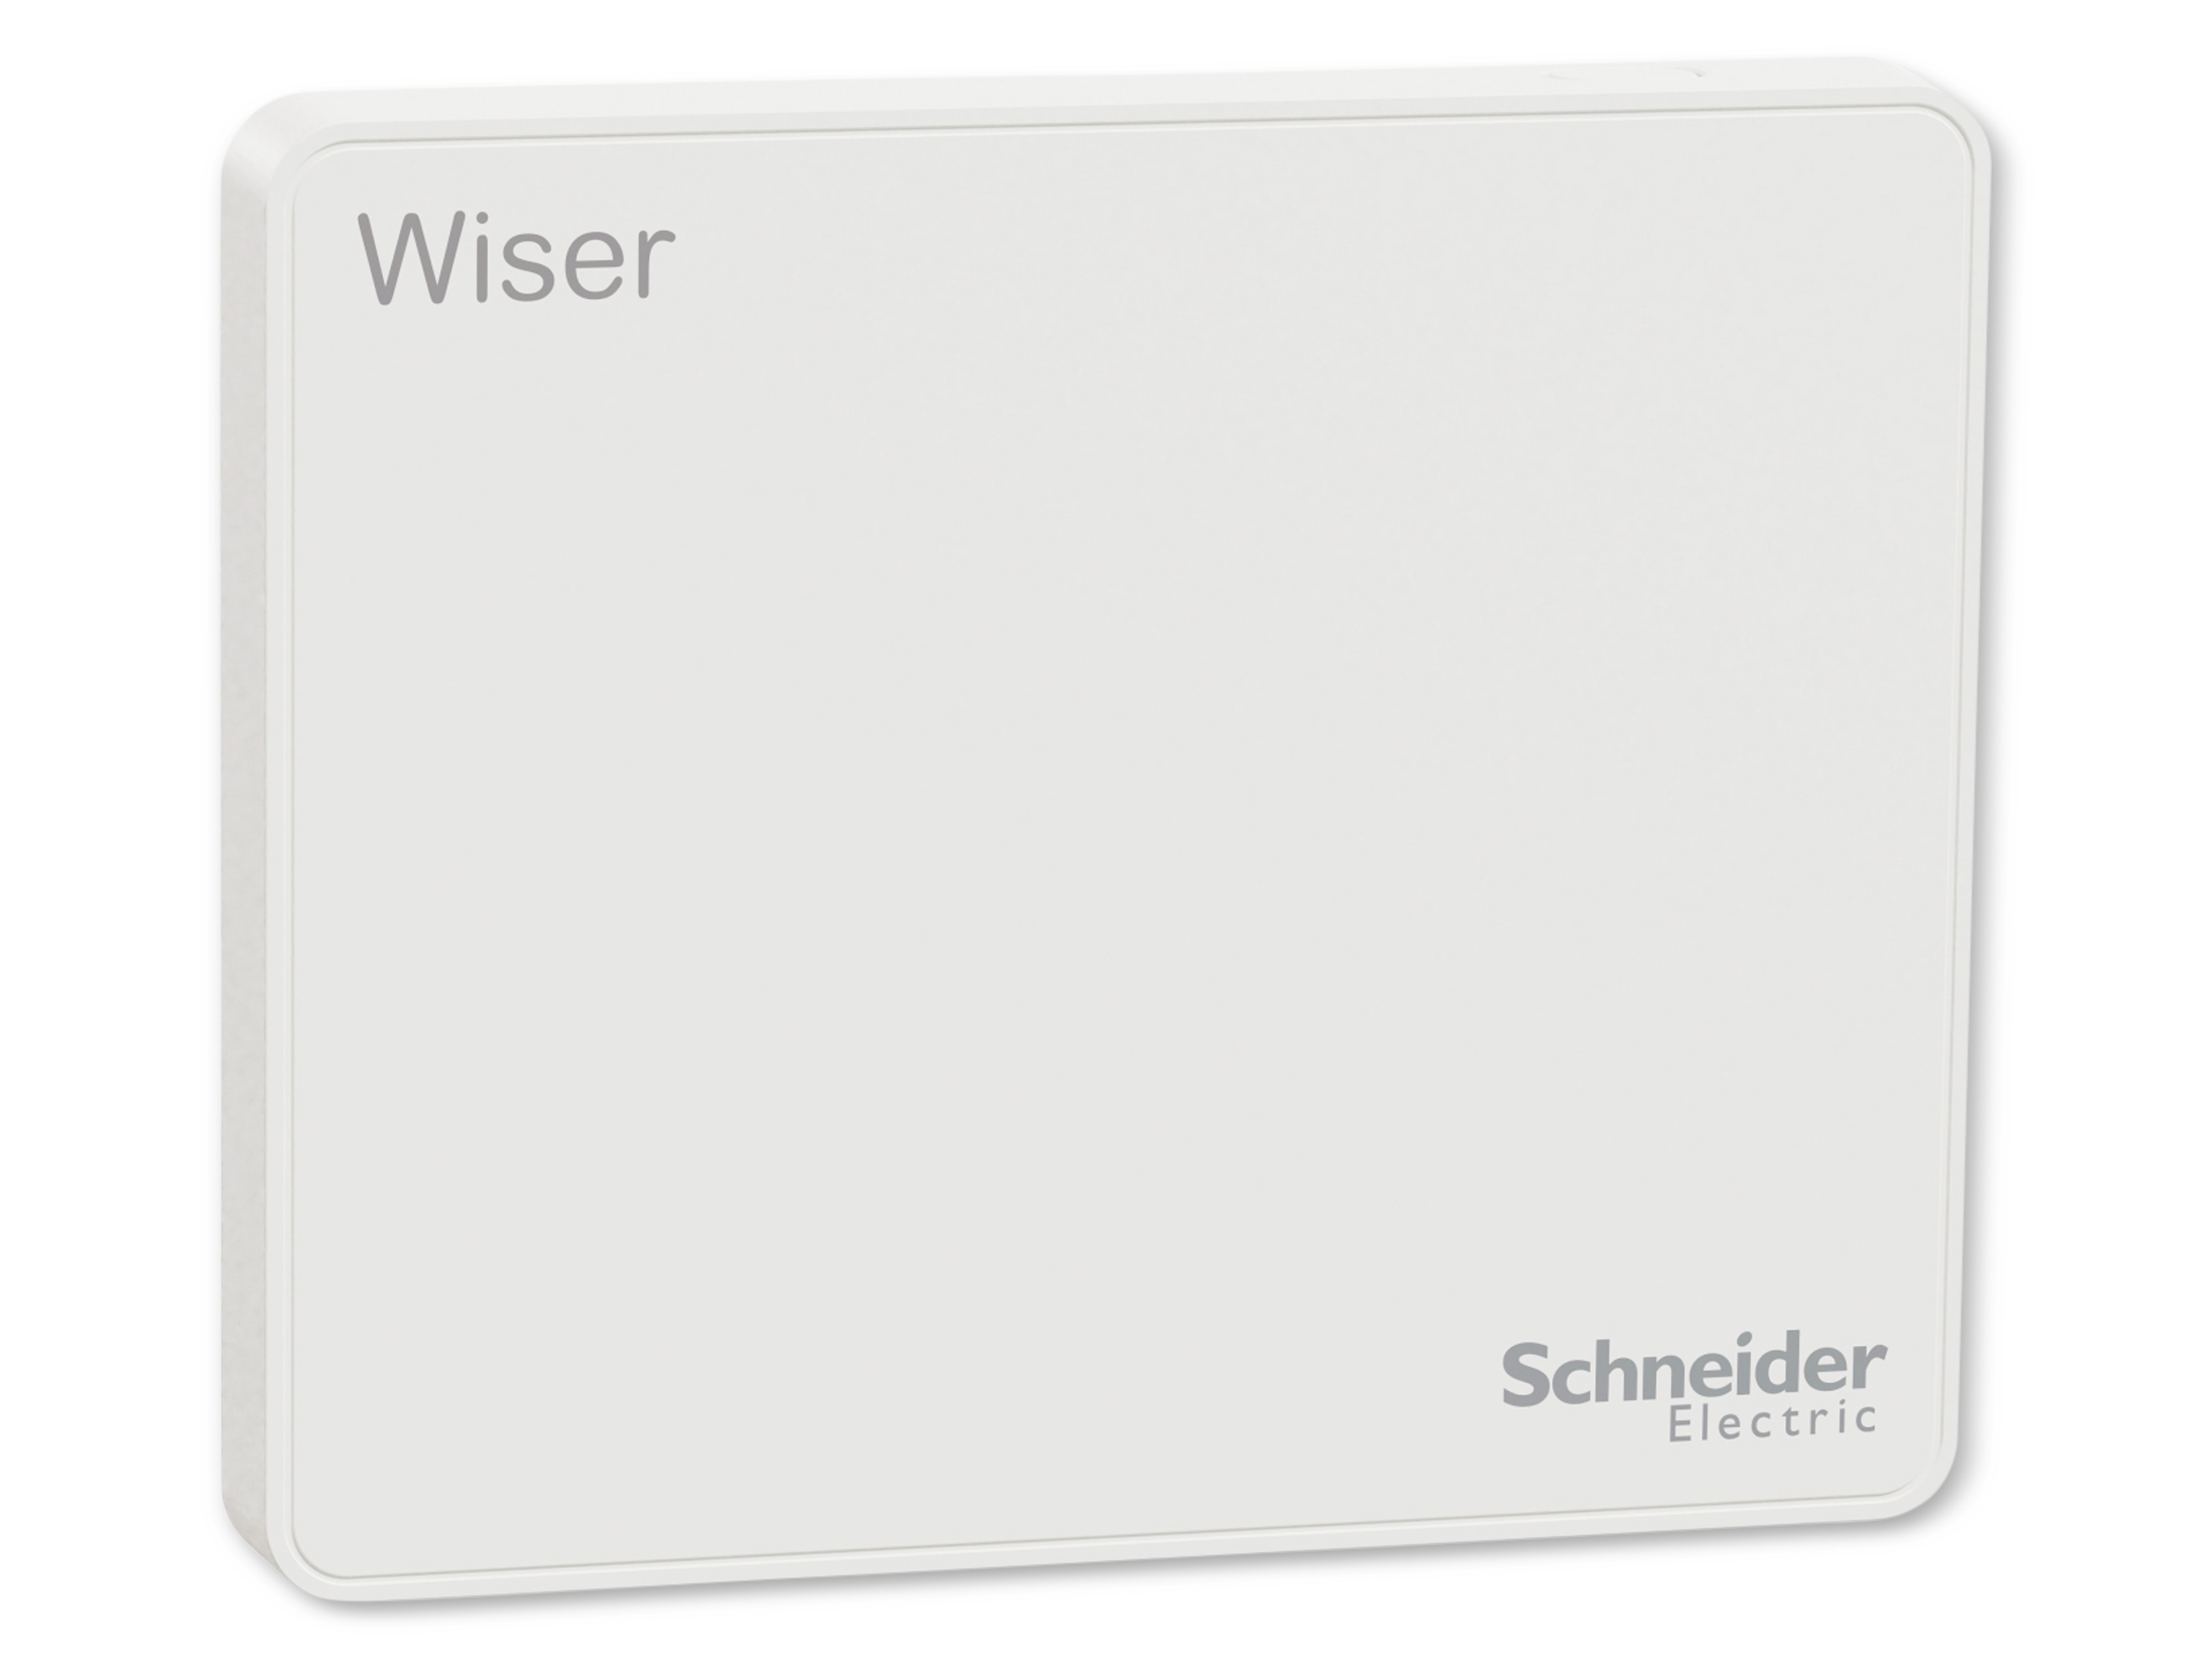 SCHNEIDER ELECTRIC Smart Home Wiser Hub CCT501801, (2. Generation)